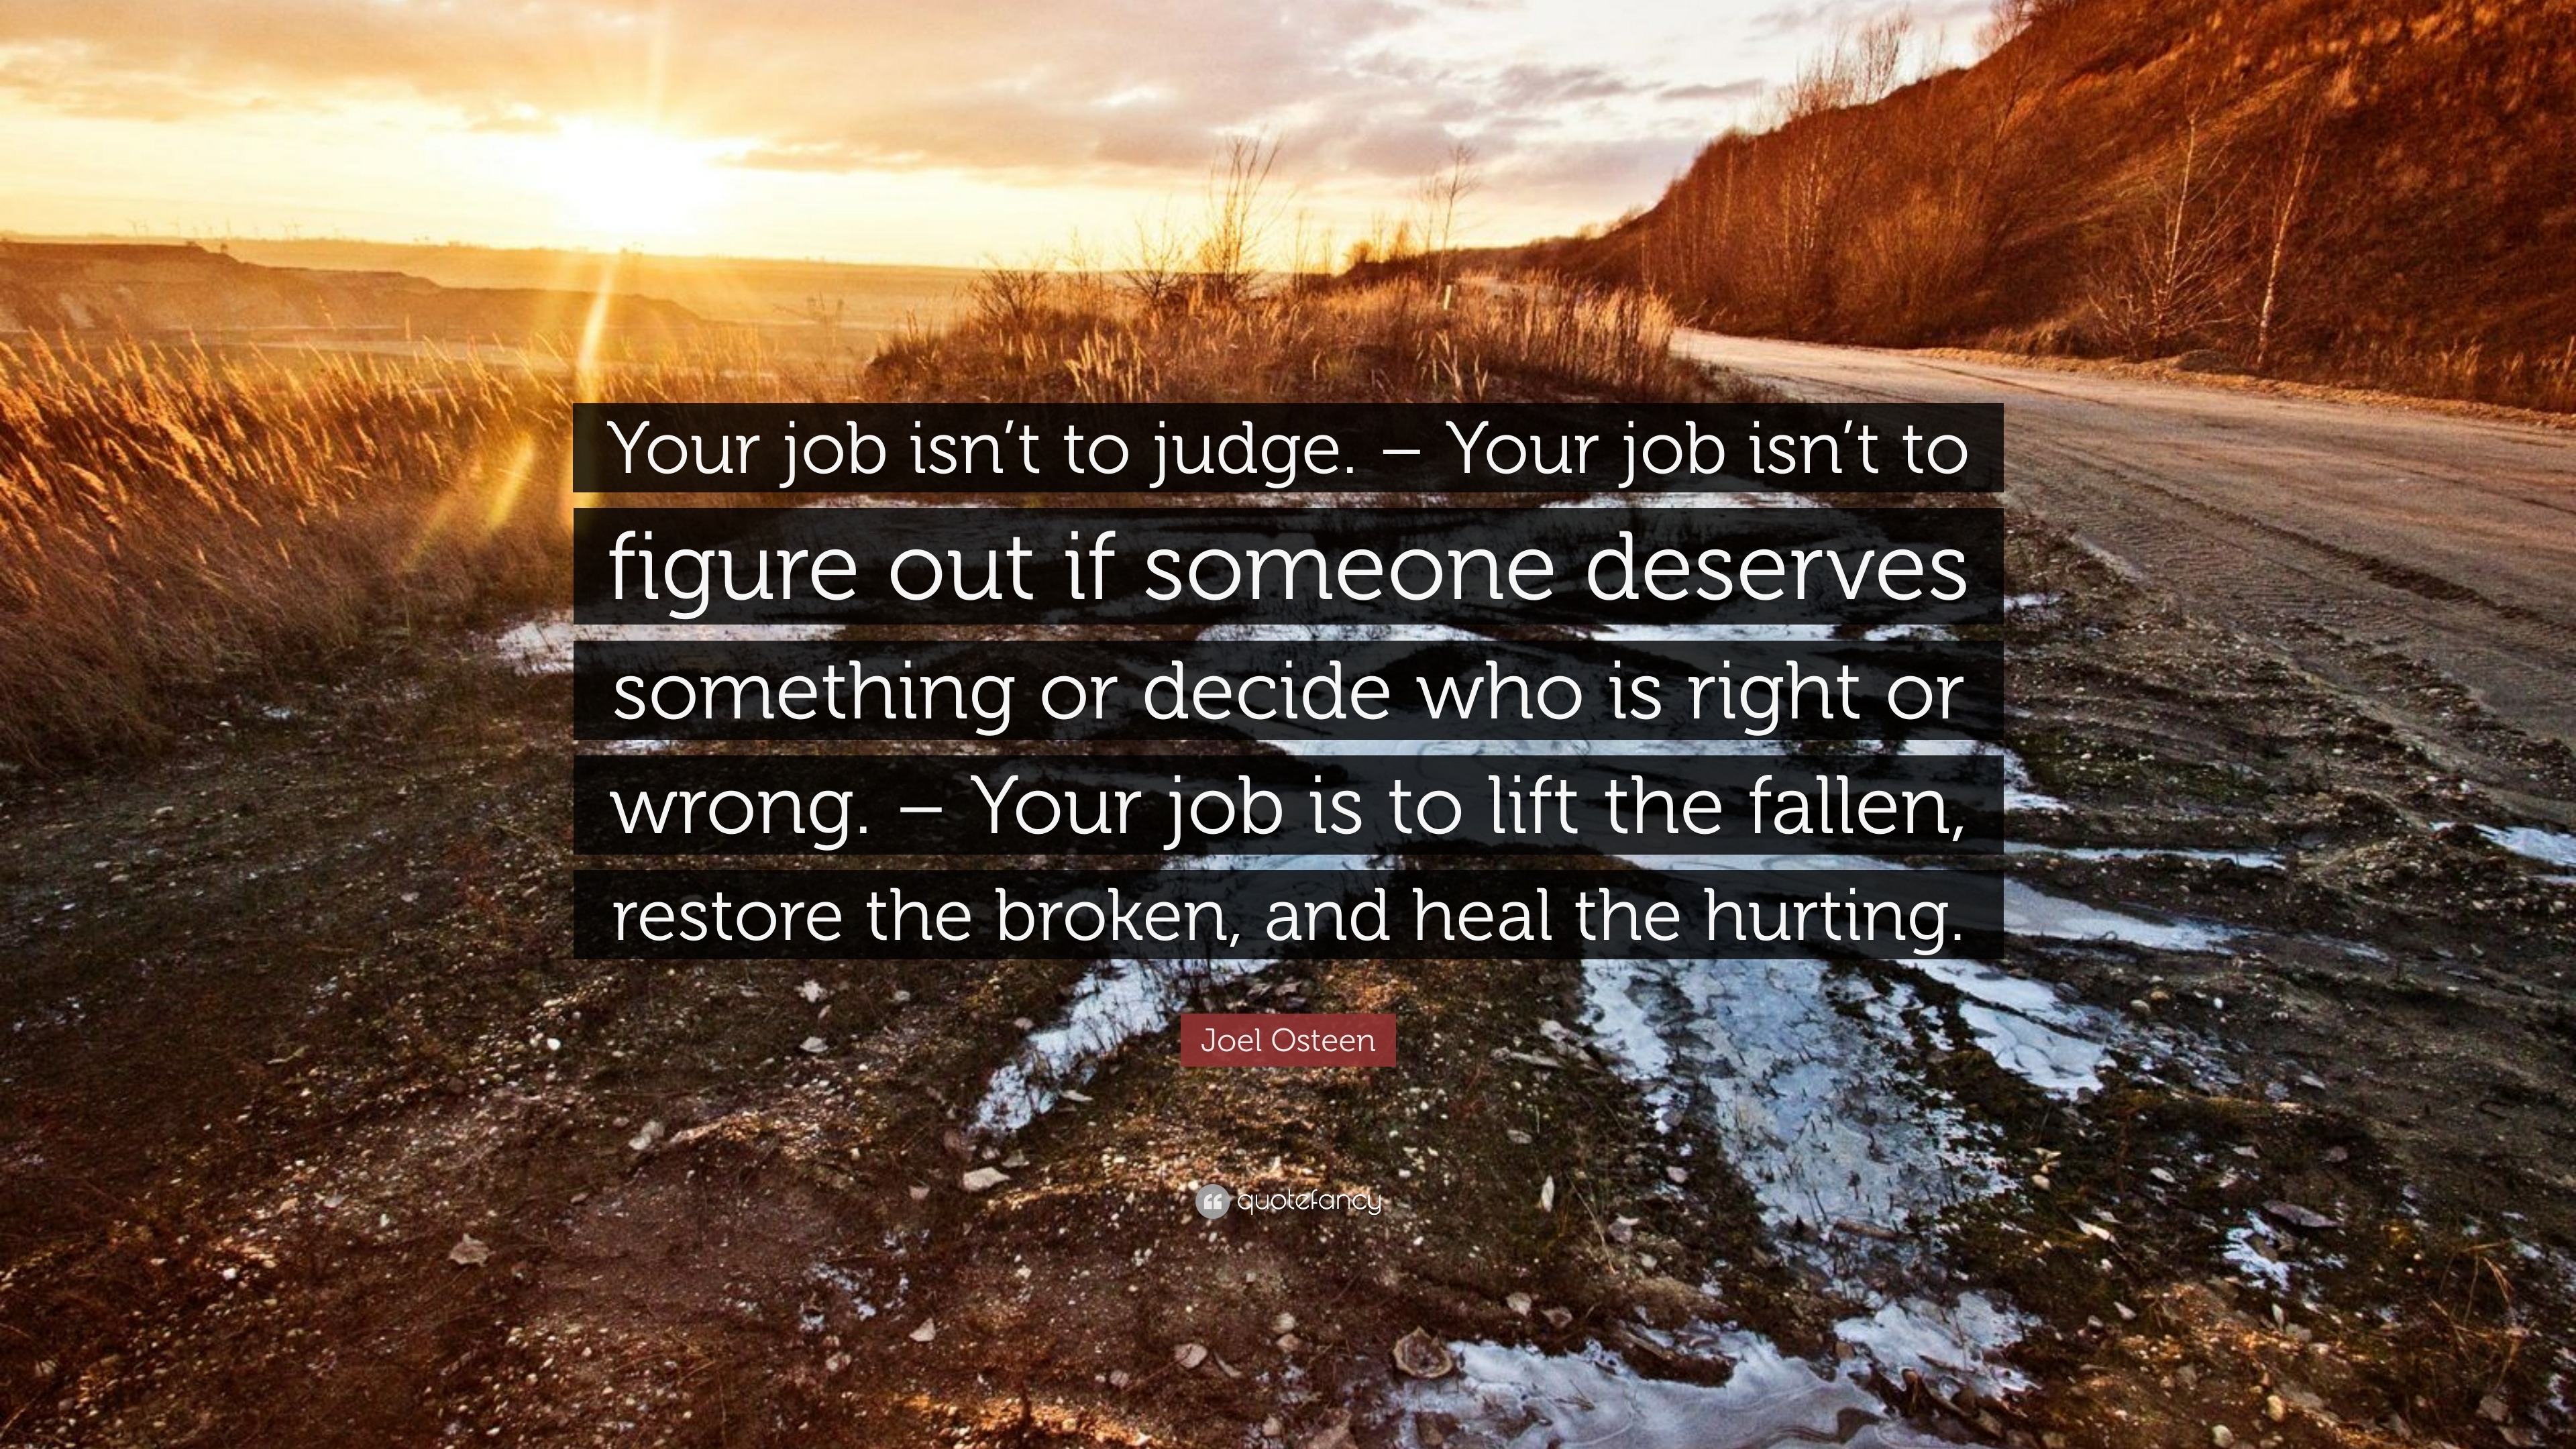 Joel Osteen Quote “Your job isn t to judge – Your job